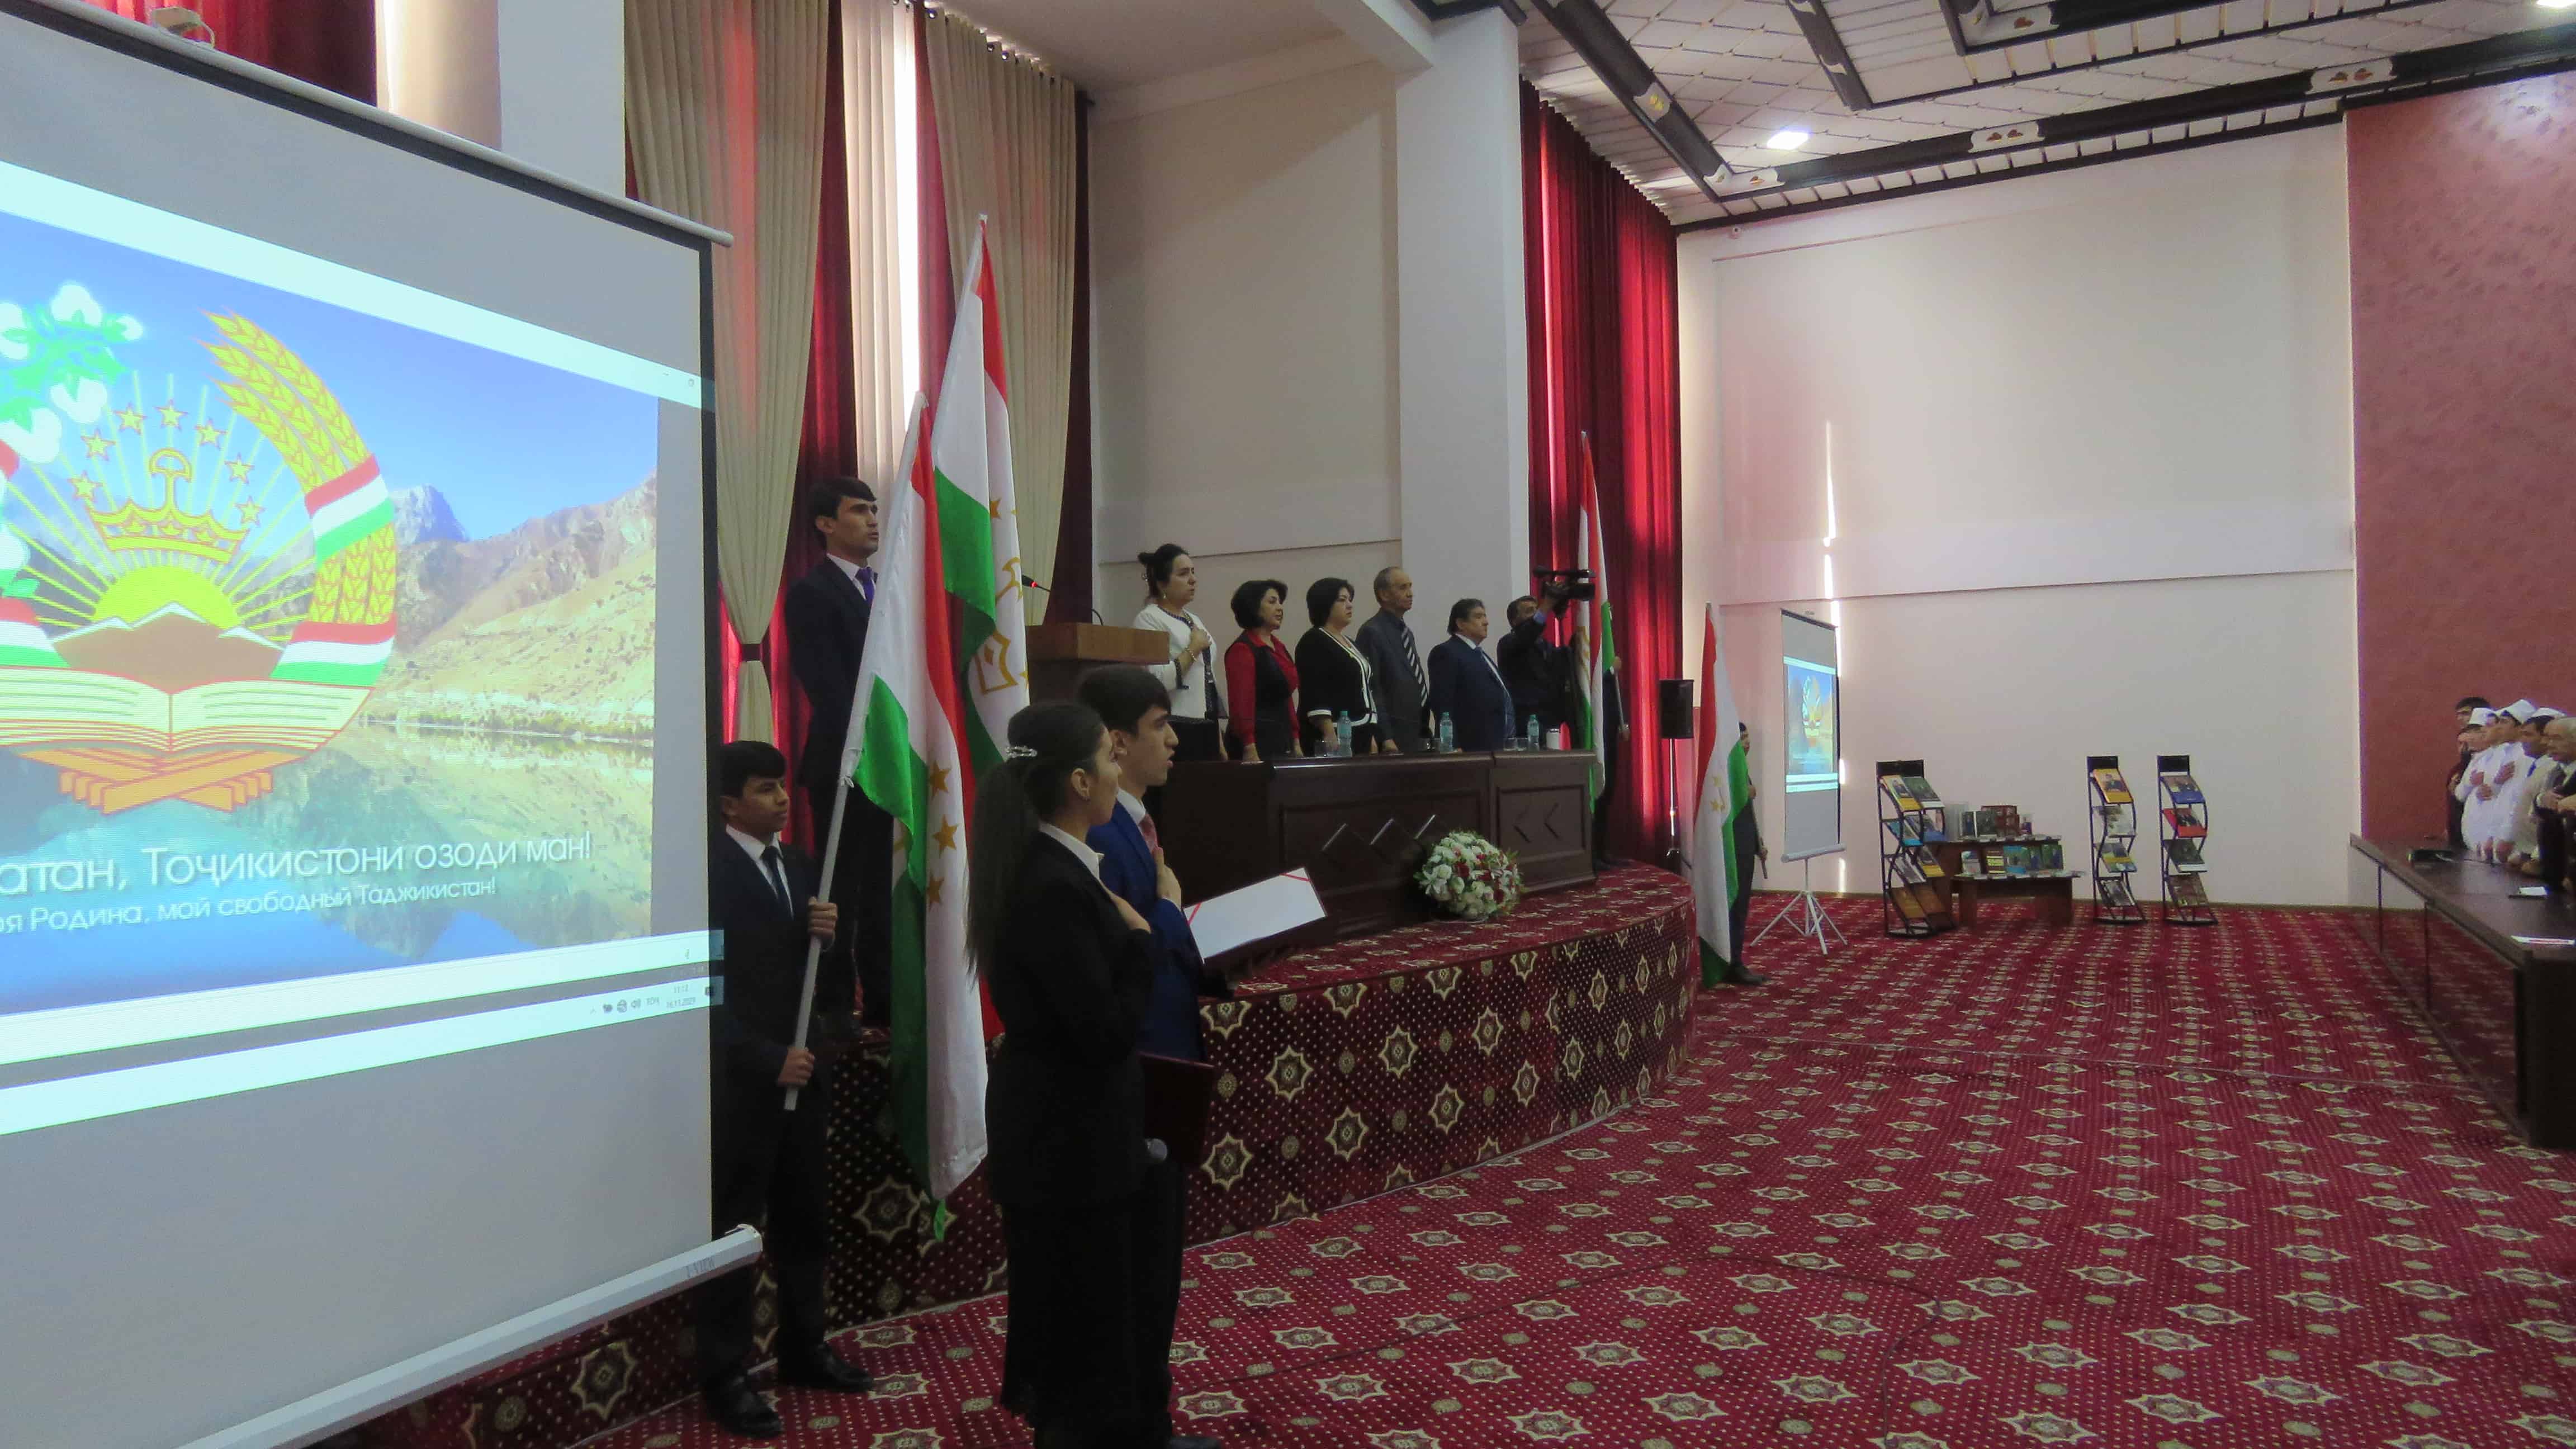 Празднование Дня Президента Республики Таджикистан и XVI Сессии Верховного Совета Таджикистана в НОУ «Медико - социальный институт».